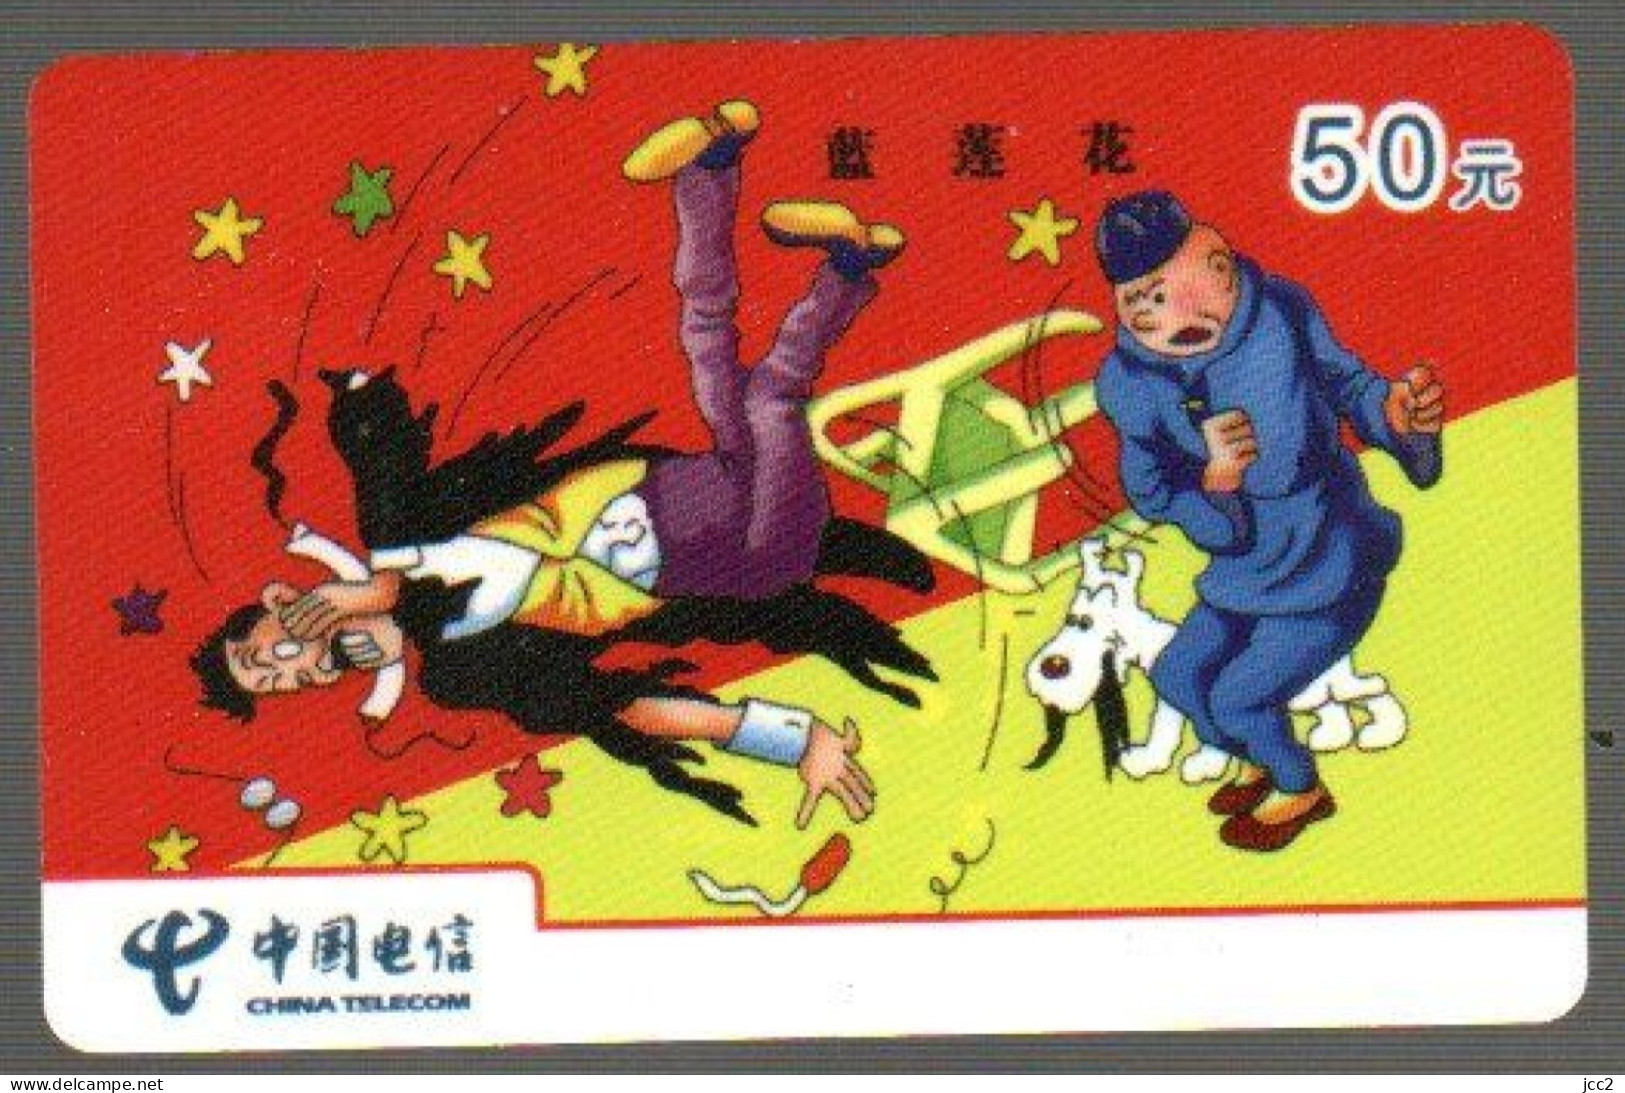 Tintin & Milou - BD